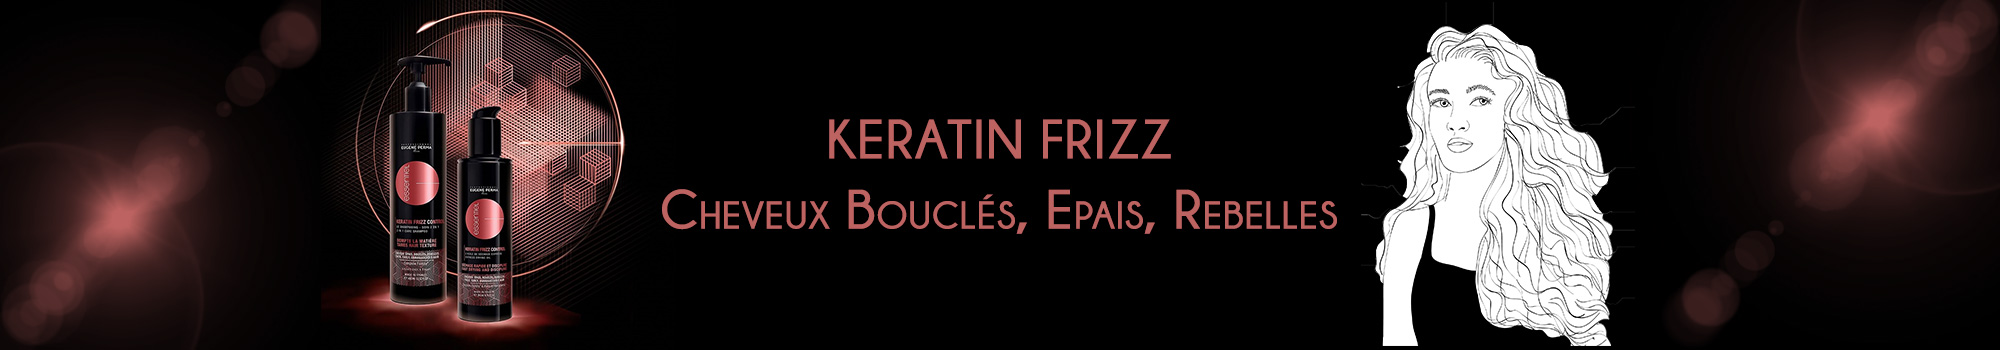 Keratin Frizz Eugène Perma